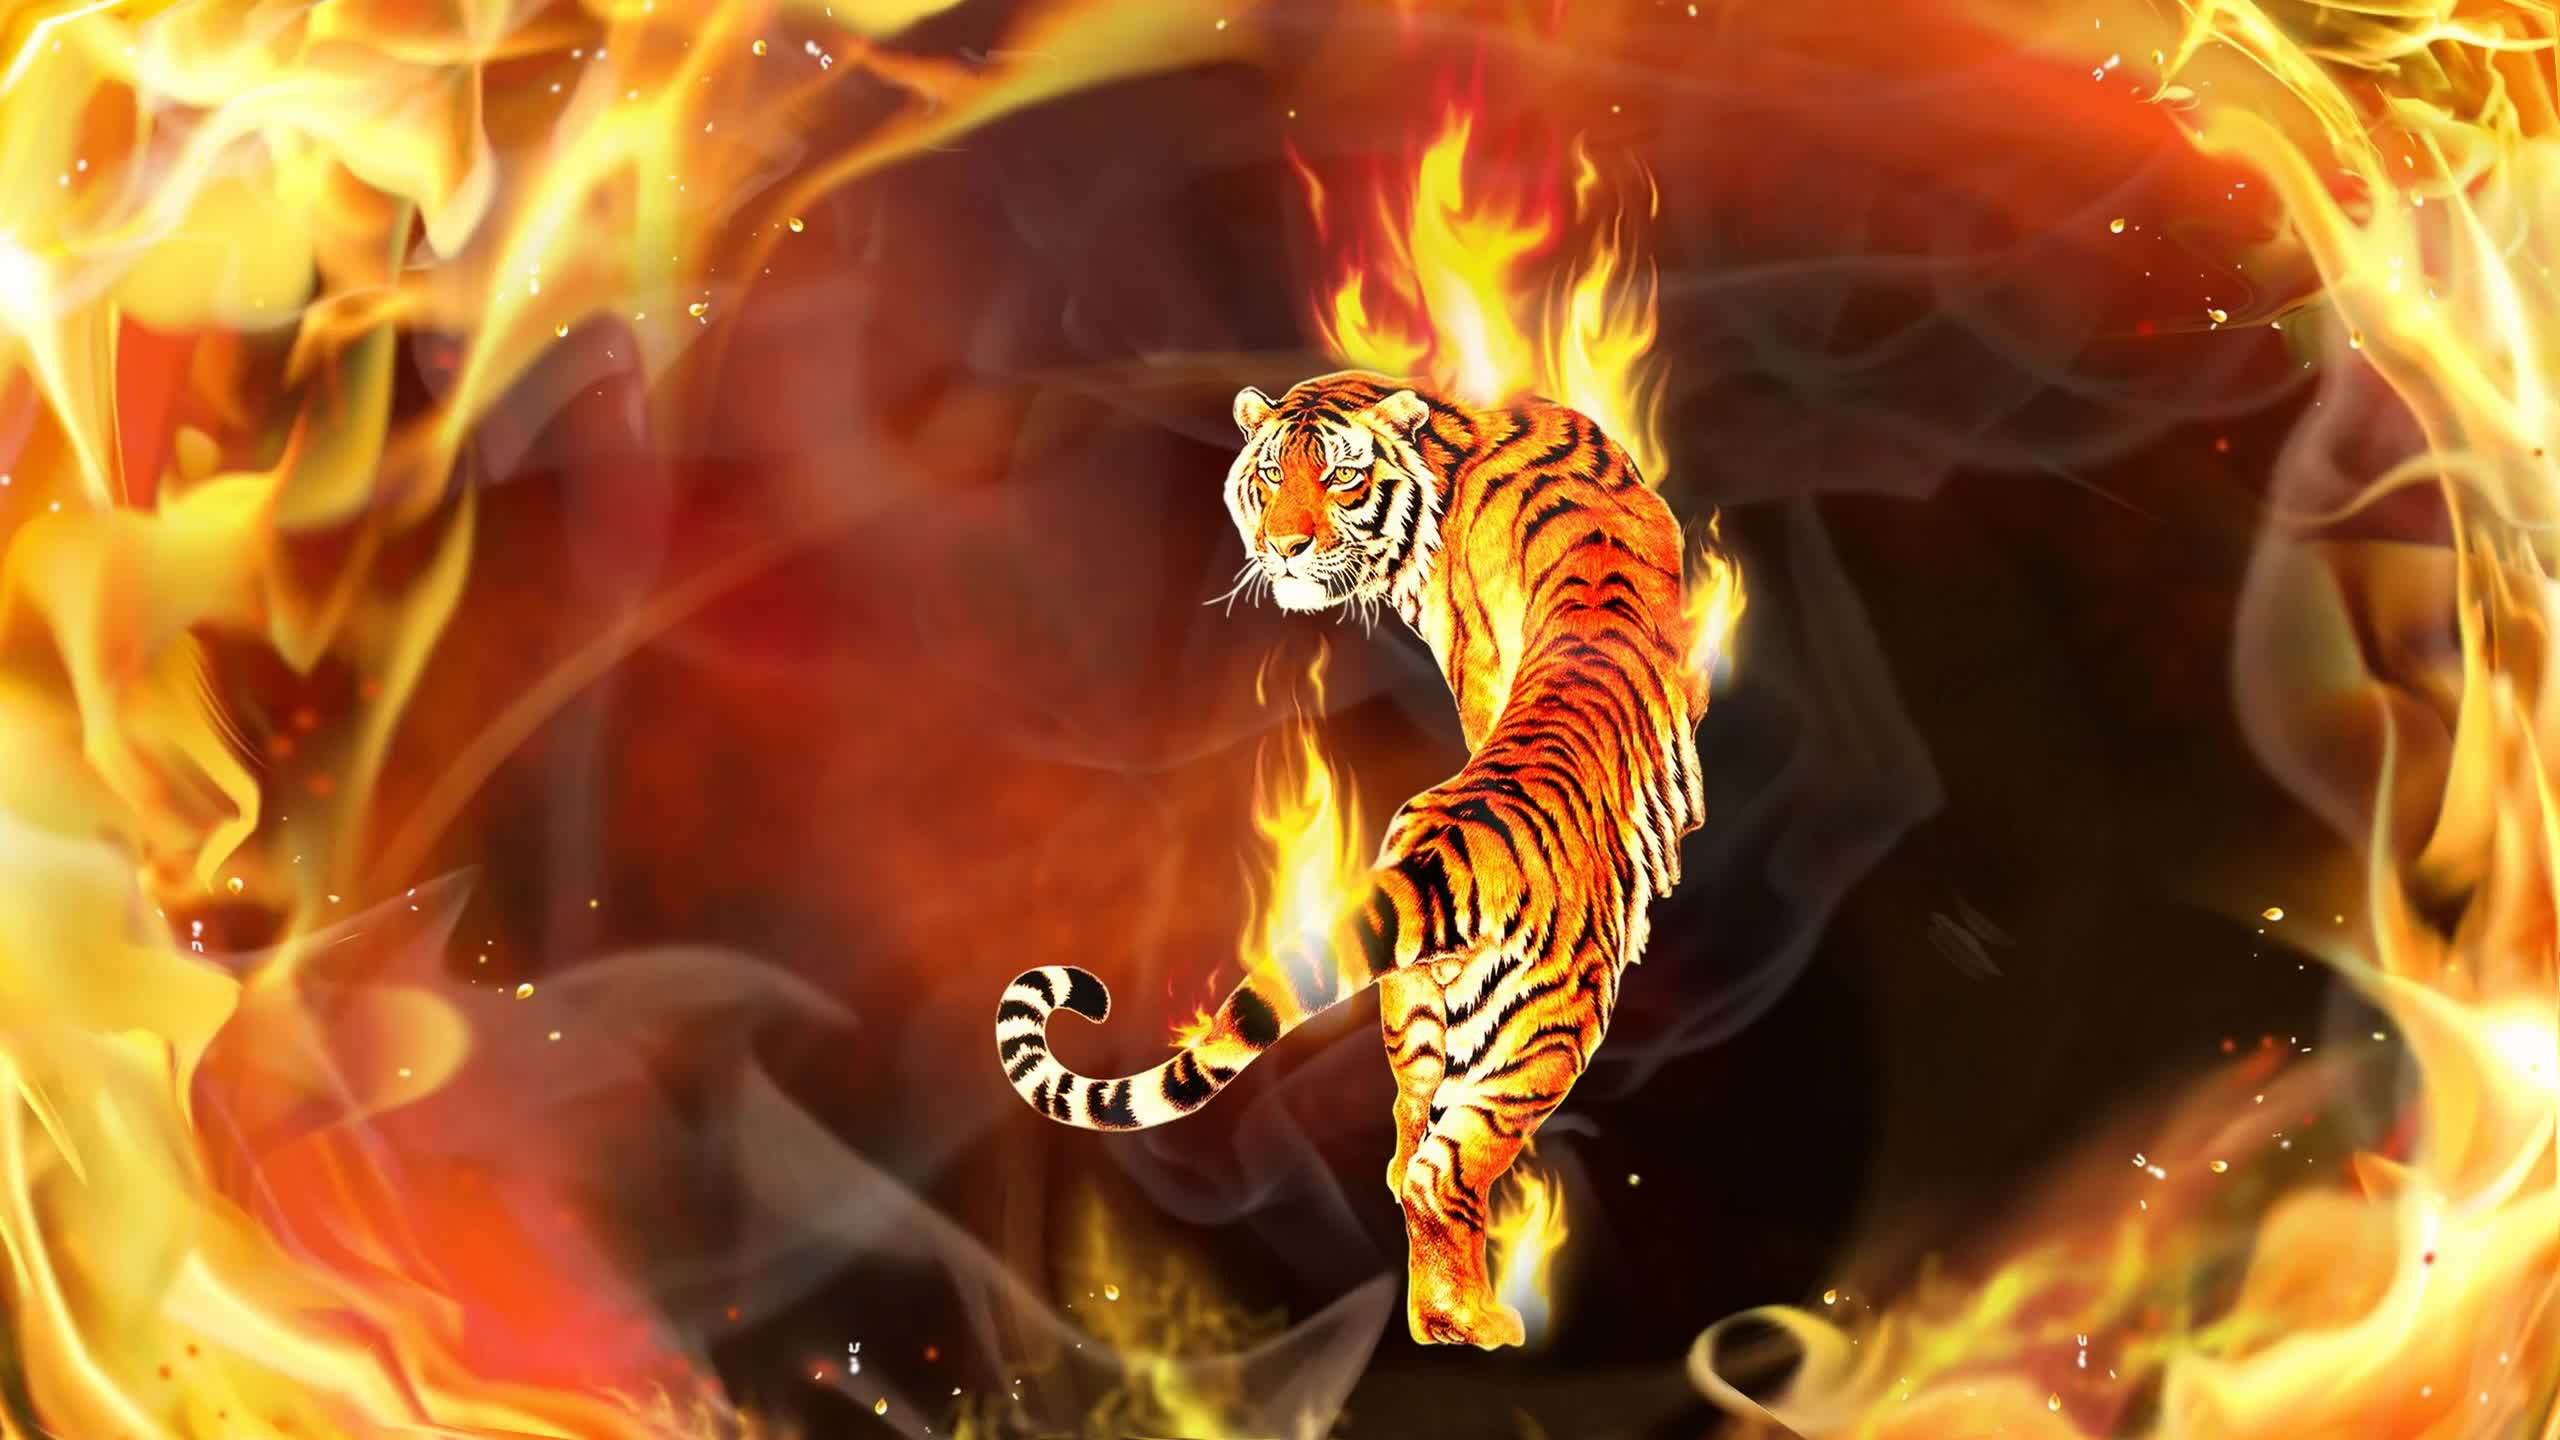 Tiger In Flames Digital Art 2k Live Wallpaper - Fondos De Pantalla De Tigres  - 2560x1440 Wallpaper - teahub.io